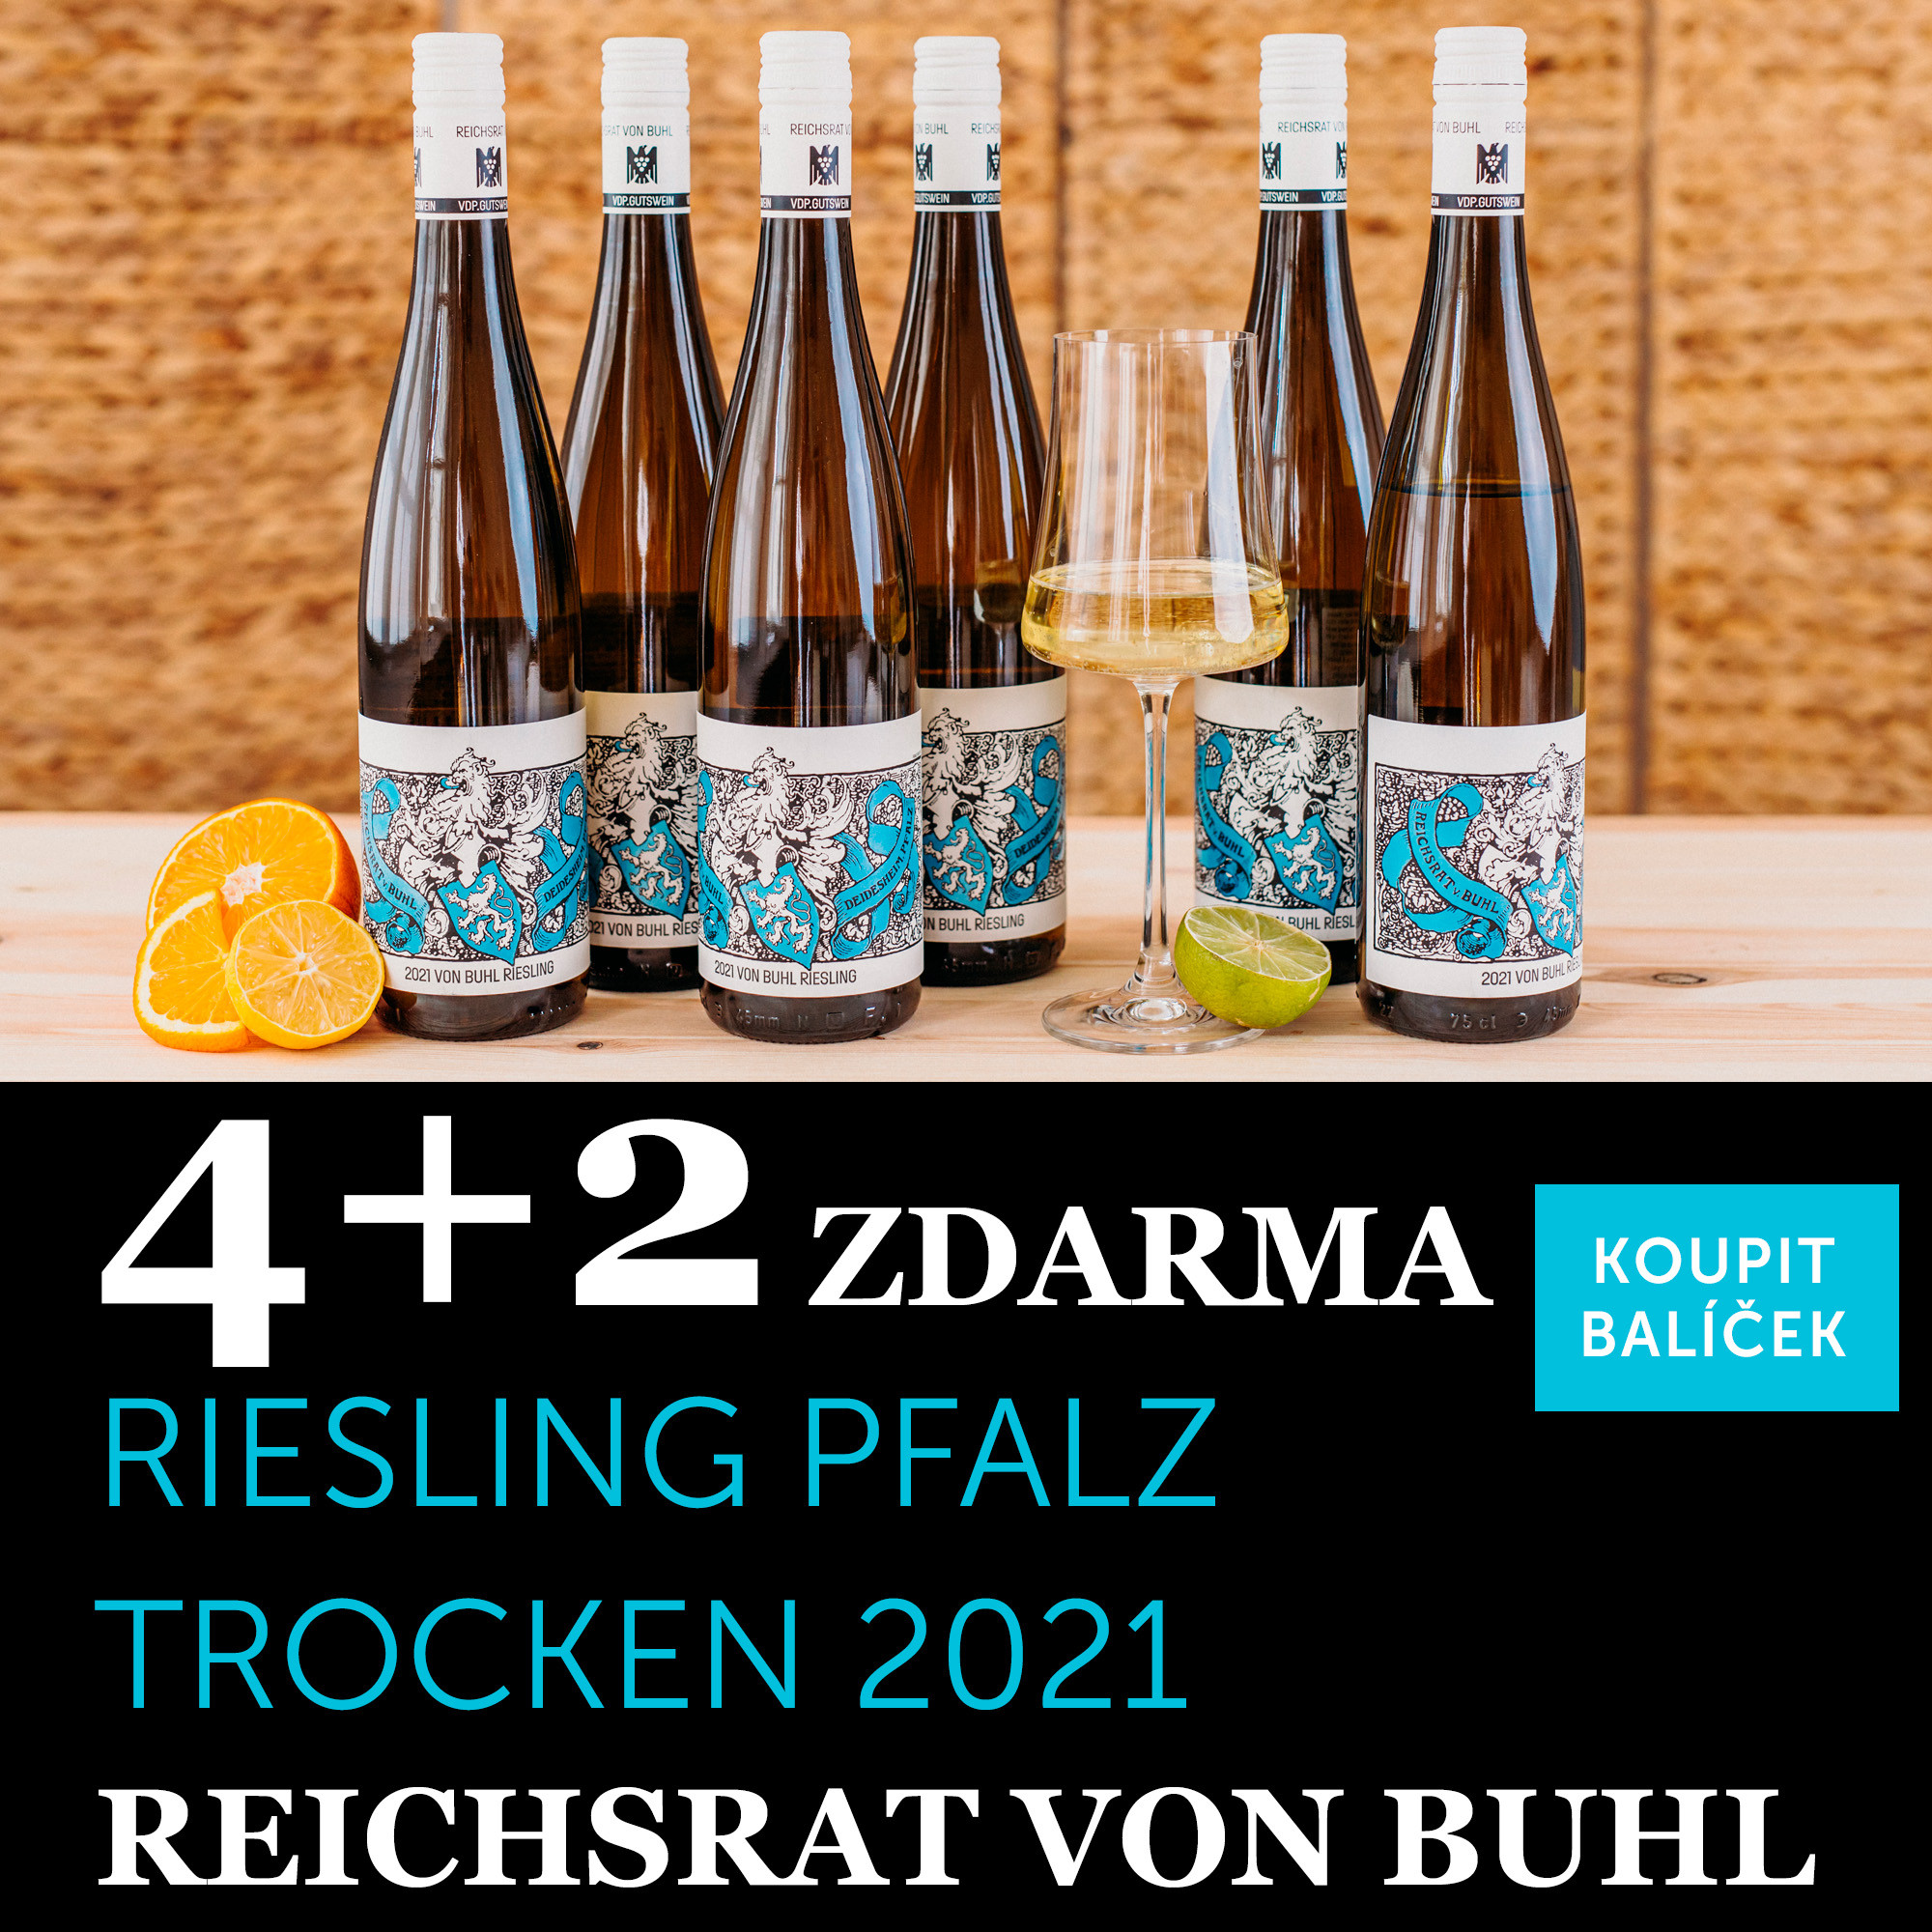 Von Buhl Riesling Pfalz trocken 2021 4+2 zdarma - UKONČENO